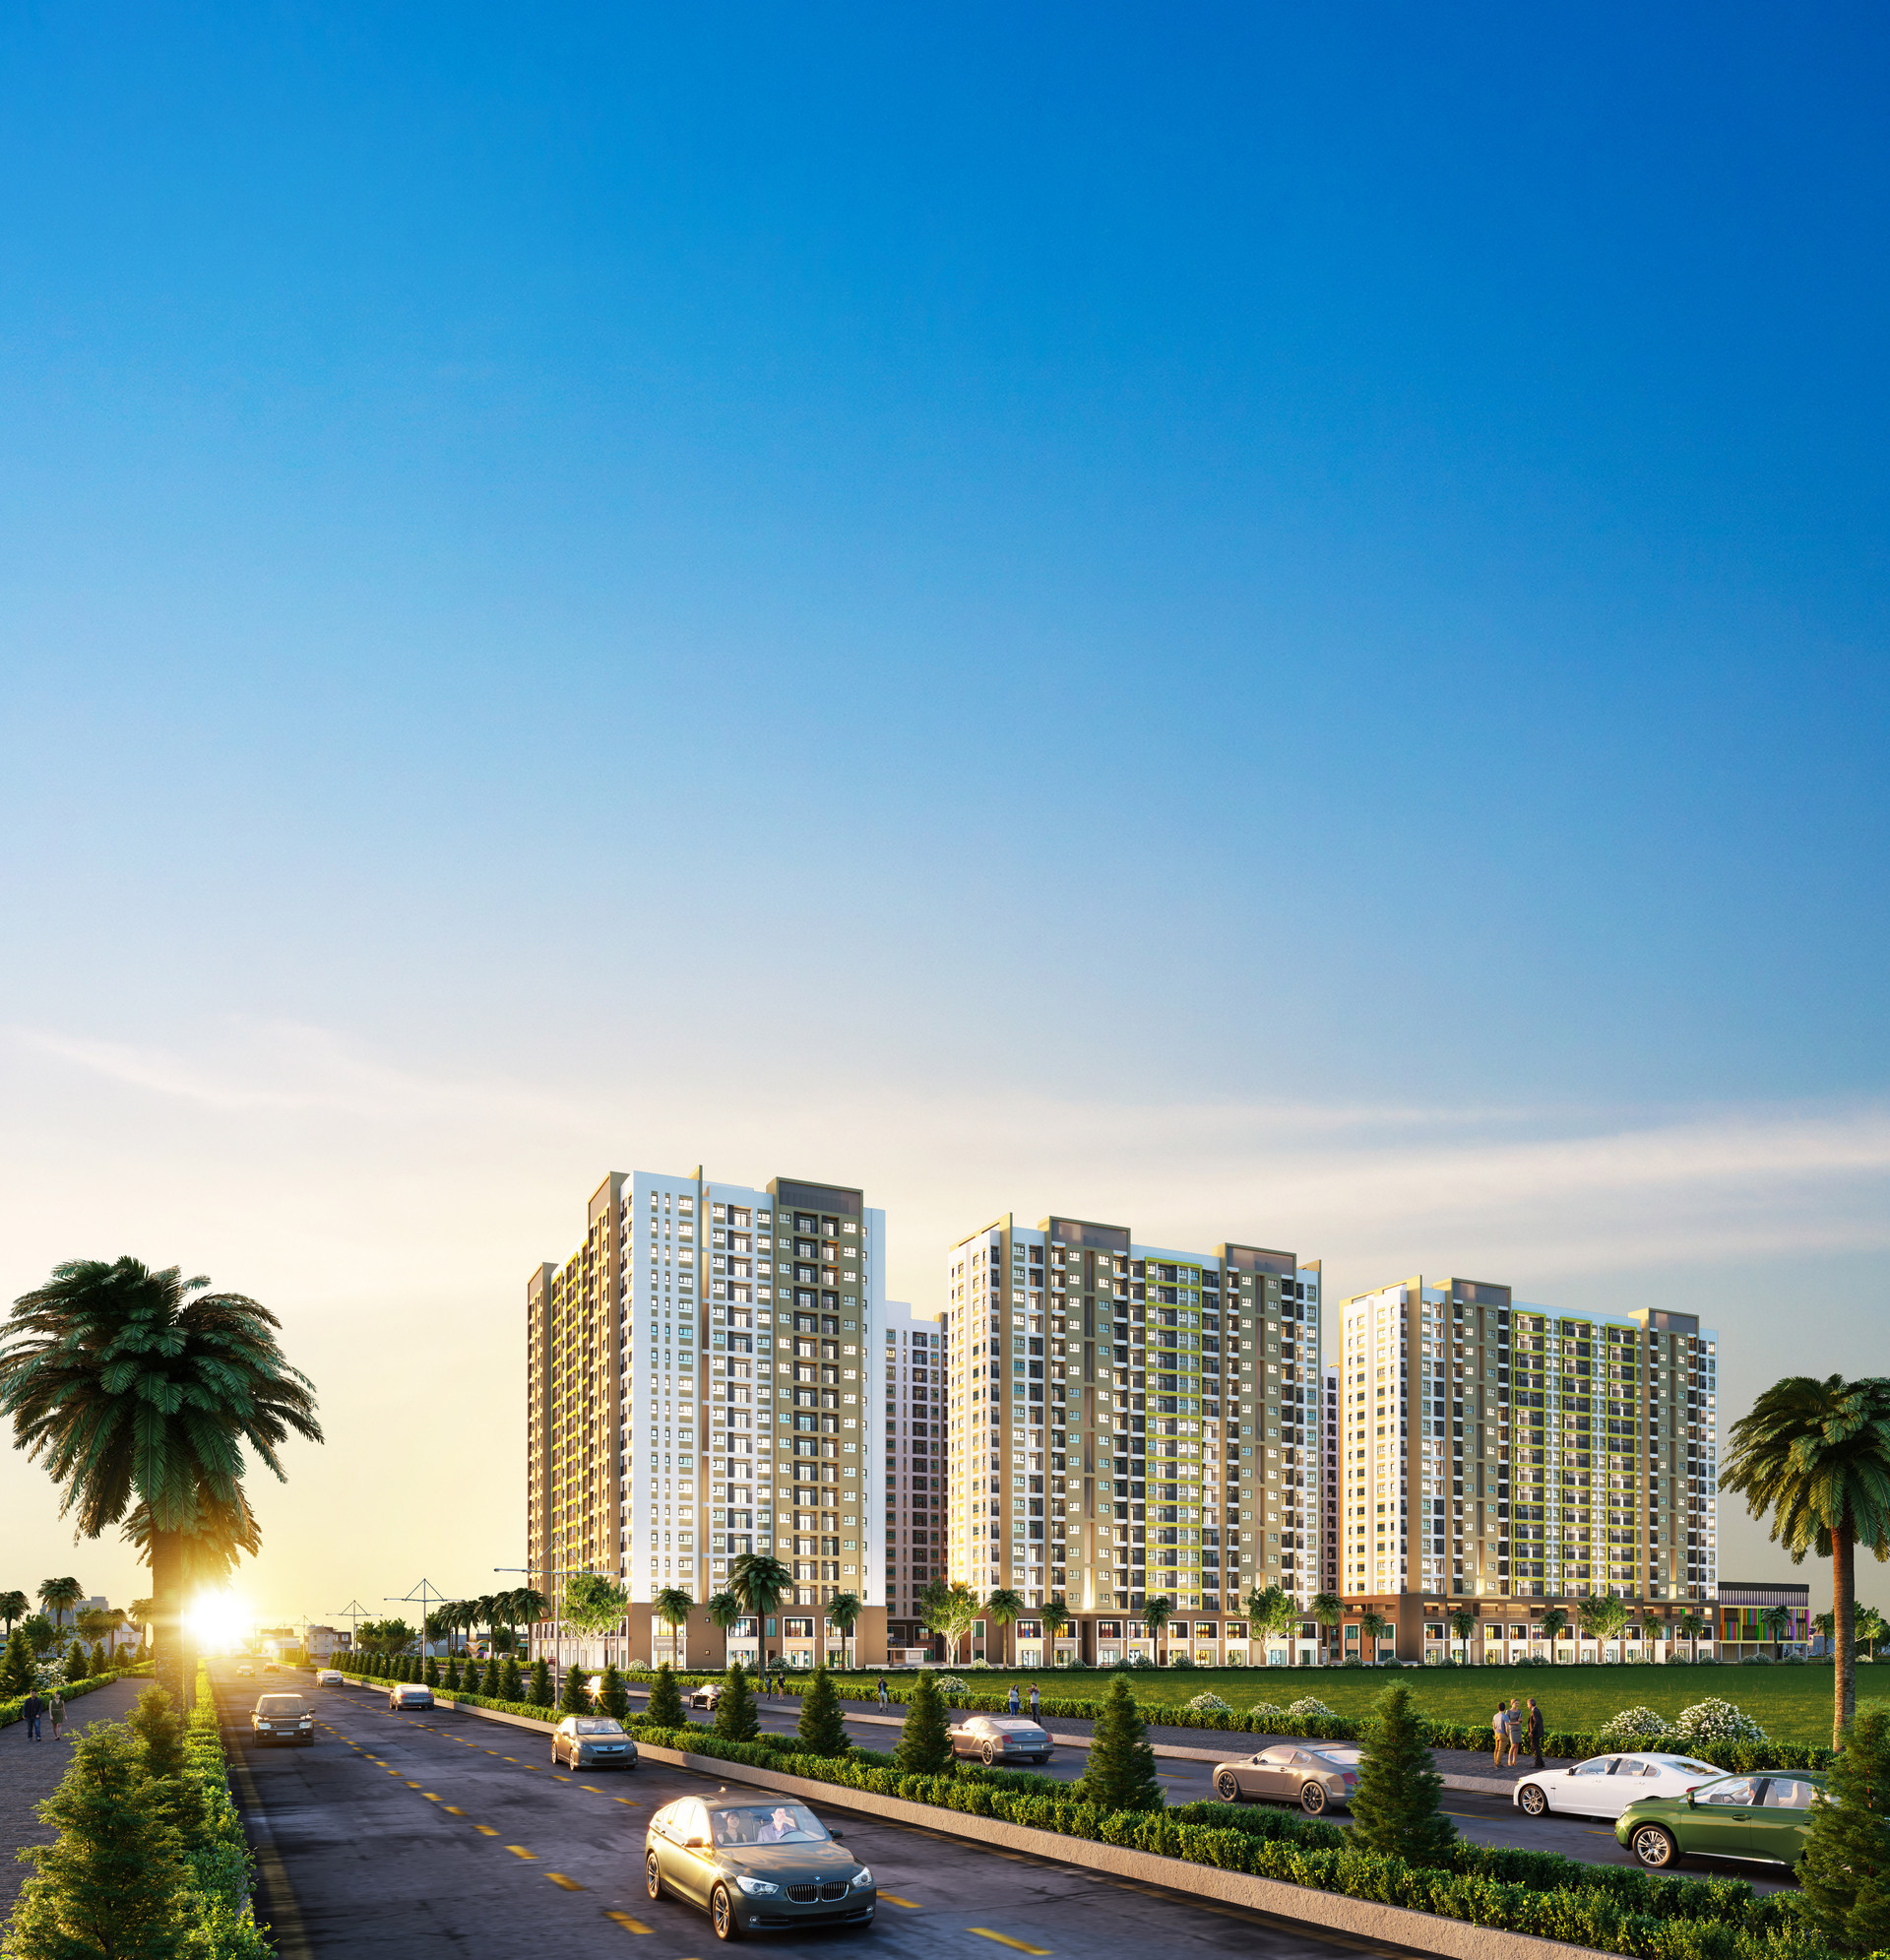 Khu căn hộ New Galaxy do hưng Thịnh Land phát triển đang tạo sức hút lớn ở thị trường phía Đông TP. Hồ Chí Minh